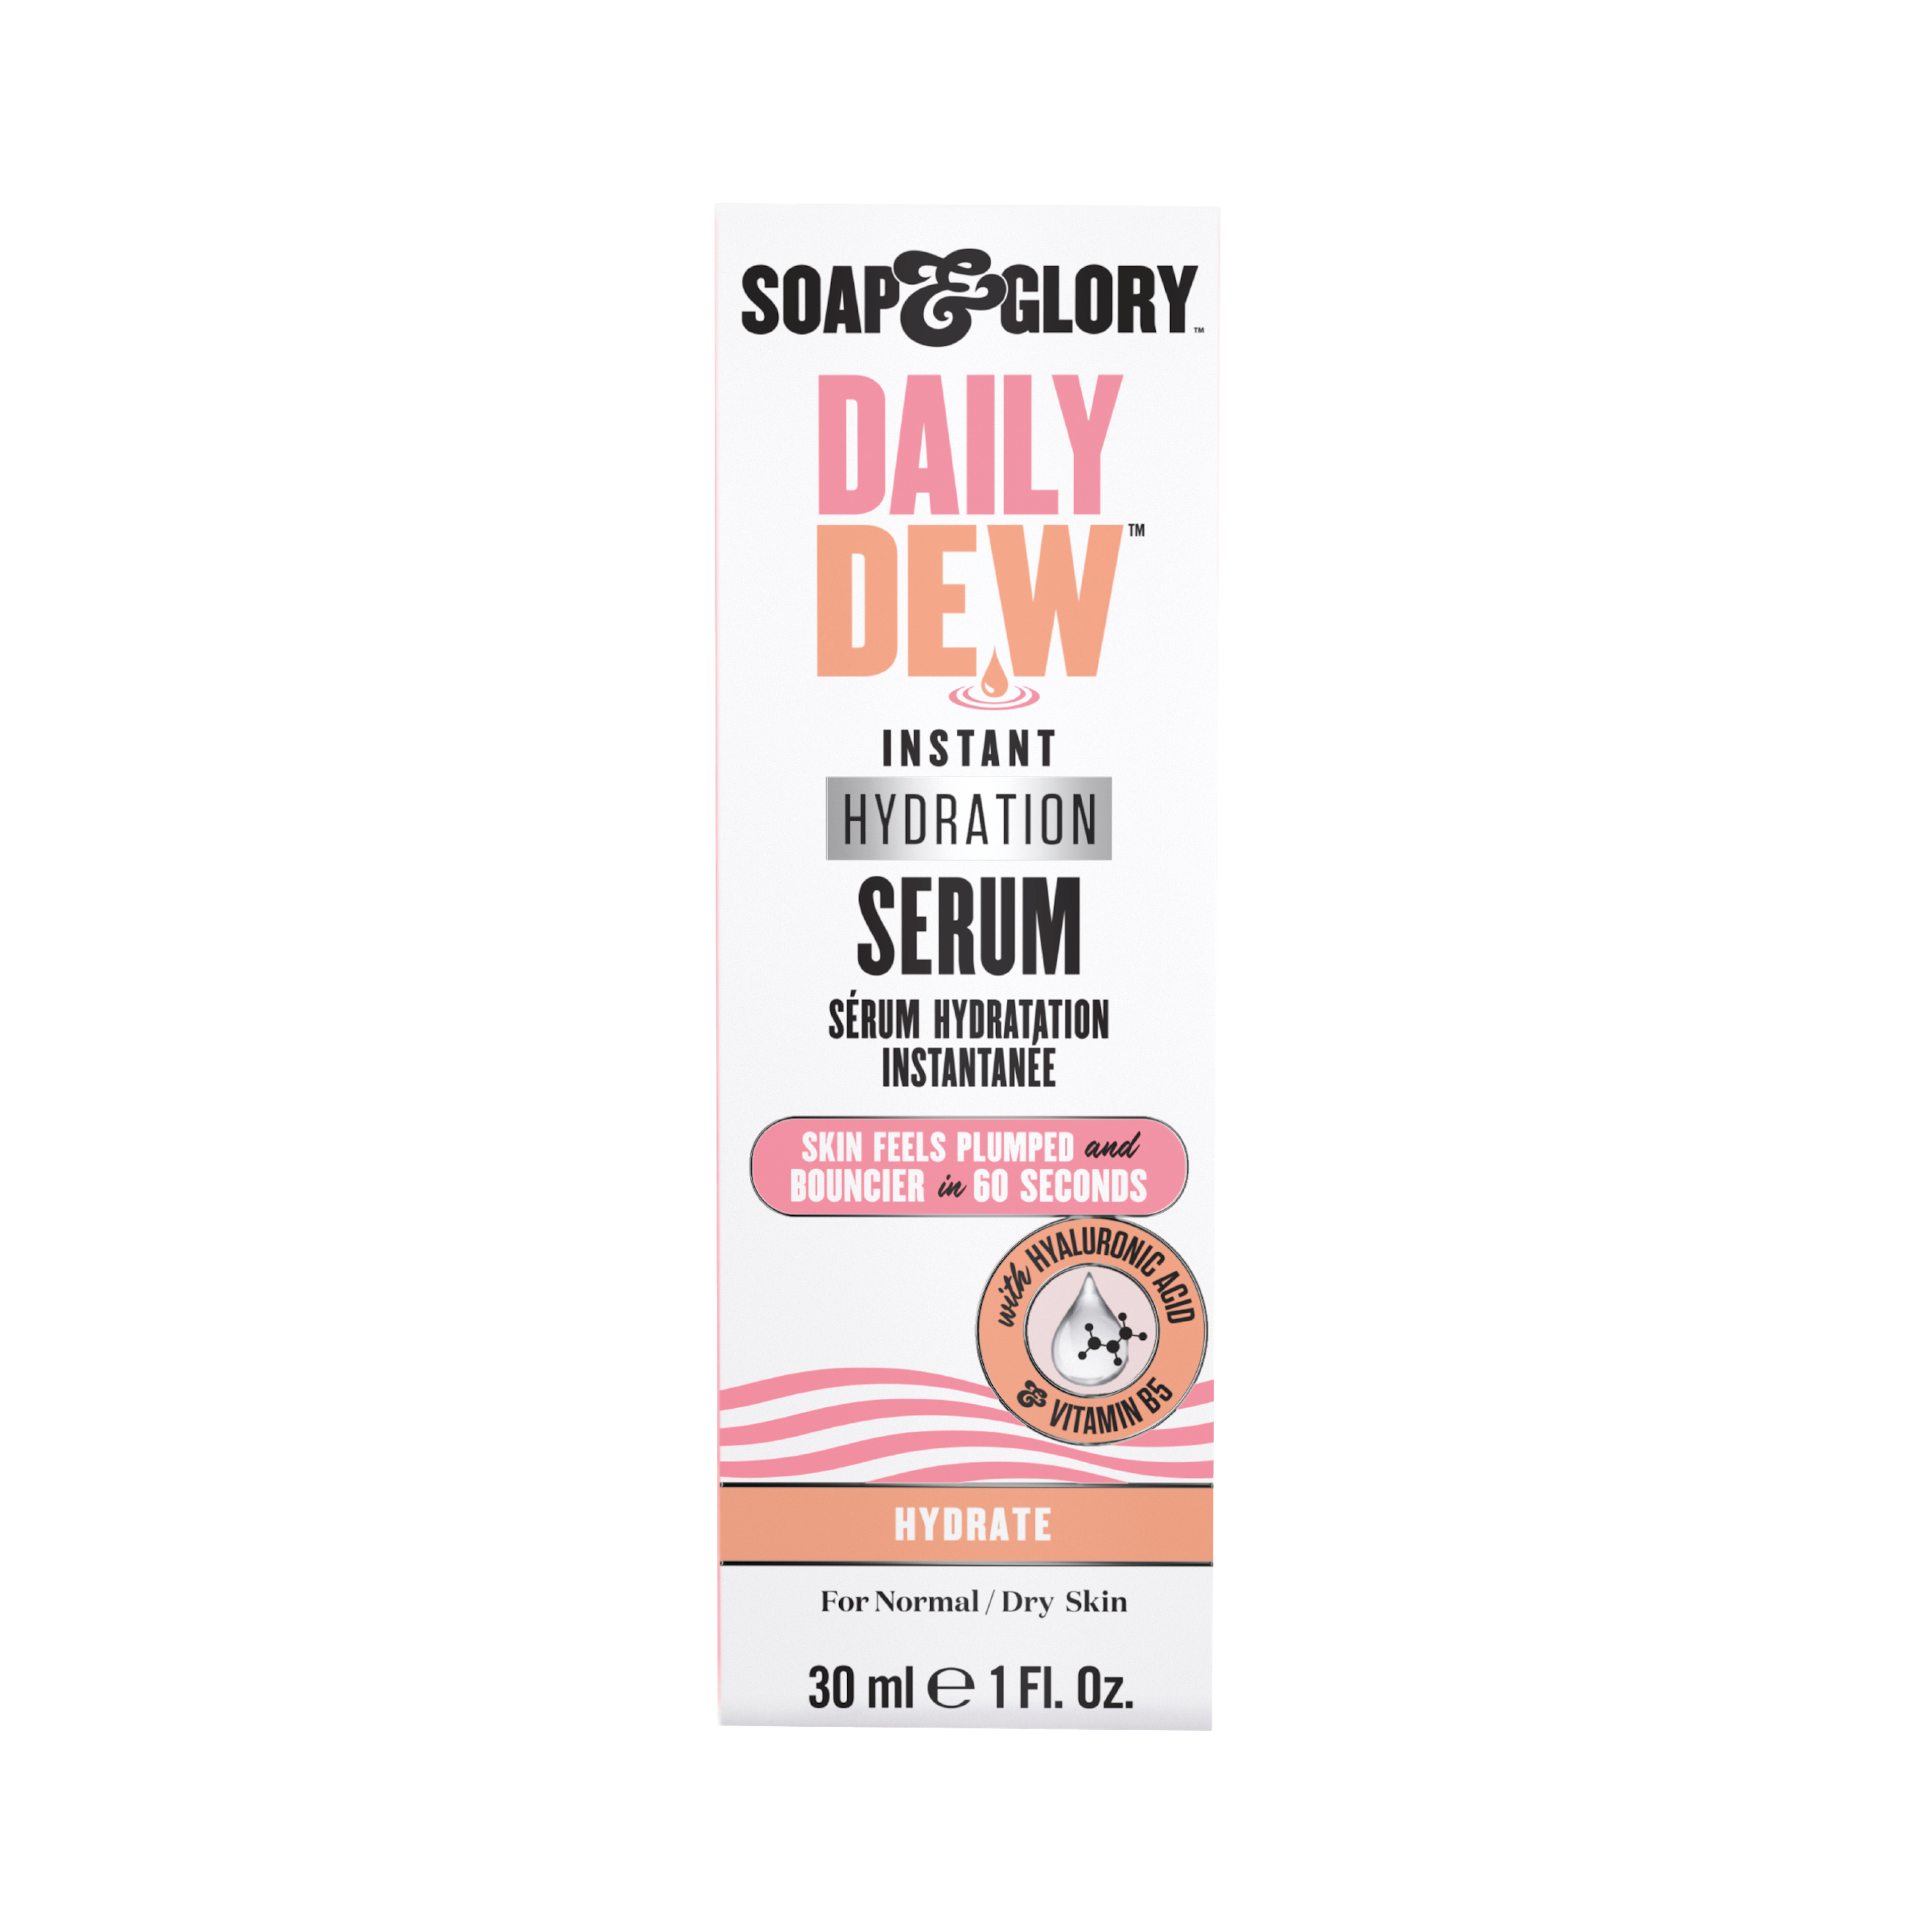 Daily Dew Hydra Serum